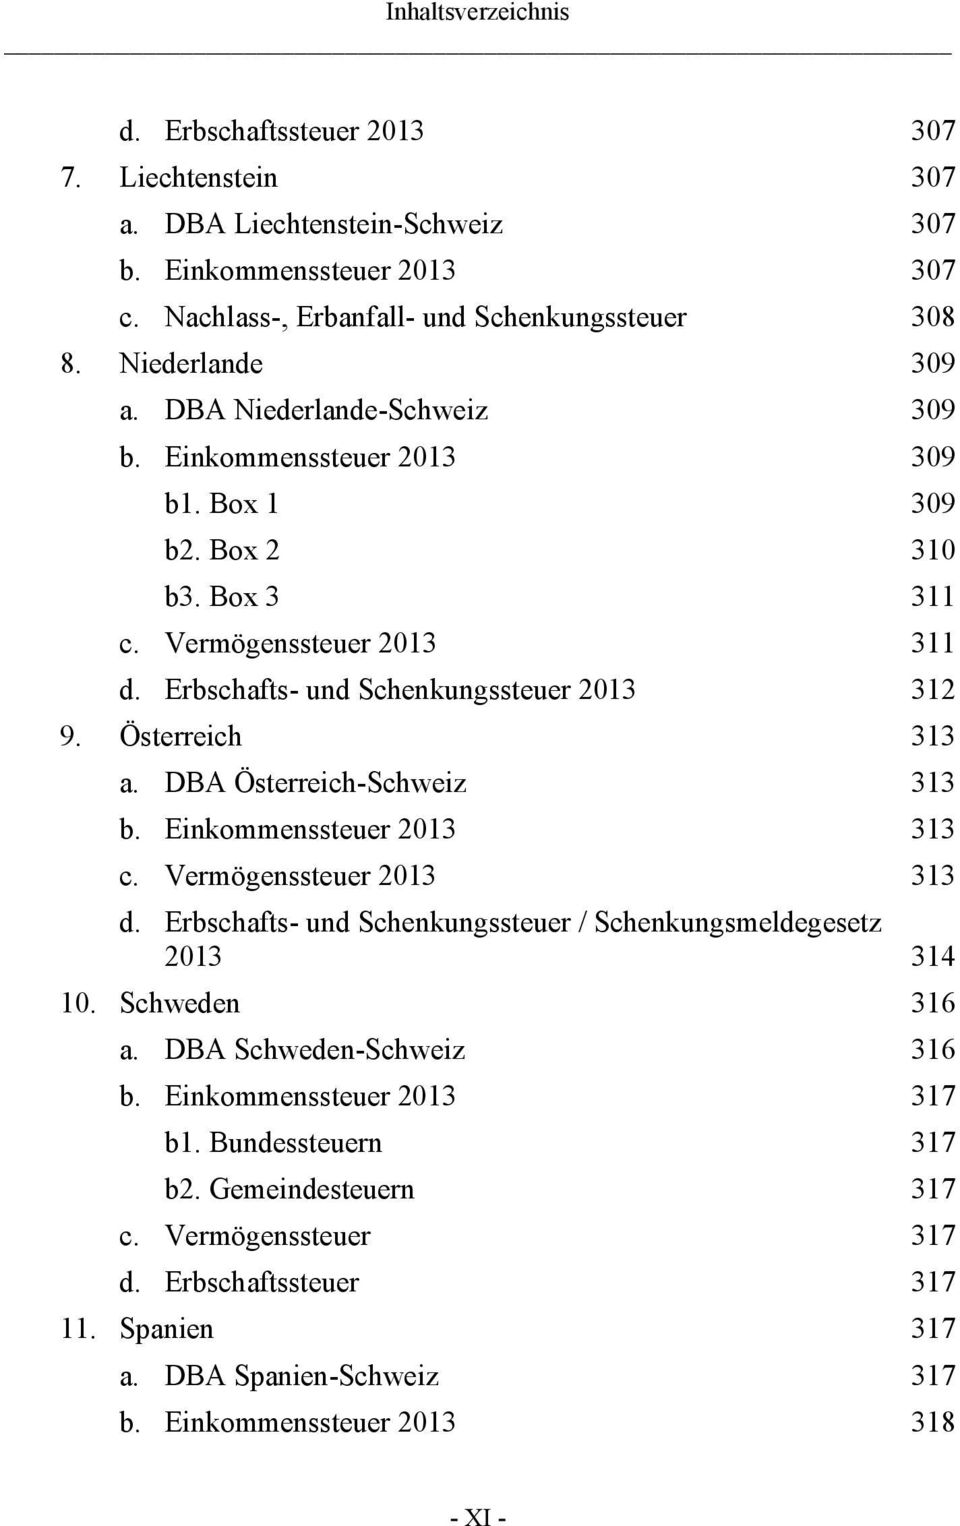 DBA Österreich-Schweiz 313 b. Einkommenssteuer 2013 313 c. Vermögenssteuer 2013 313 d. Erbschafts- und Schenkungssteuer / Schenkungsmeldegesetz 2013 314 10. Schweden 316 a.